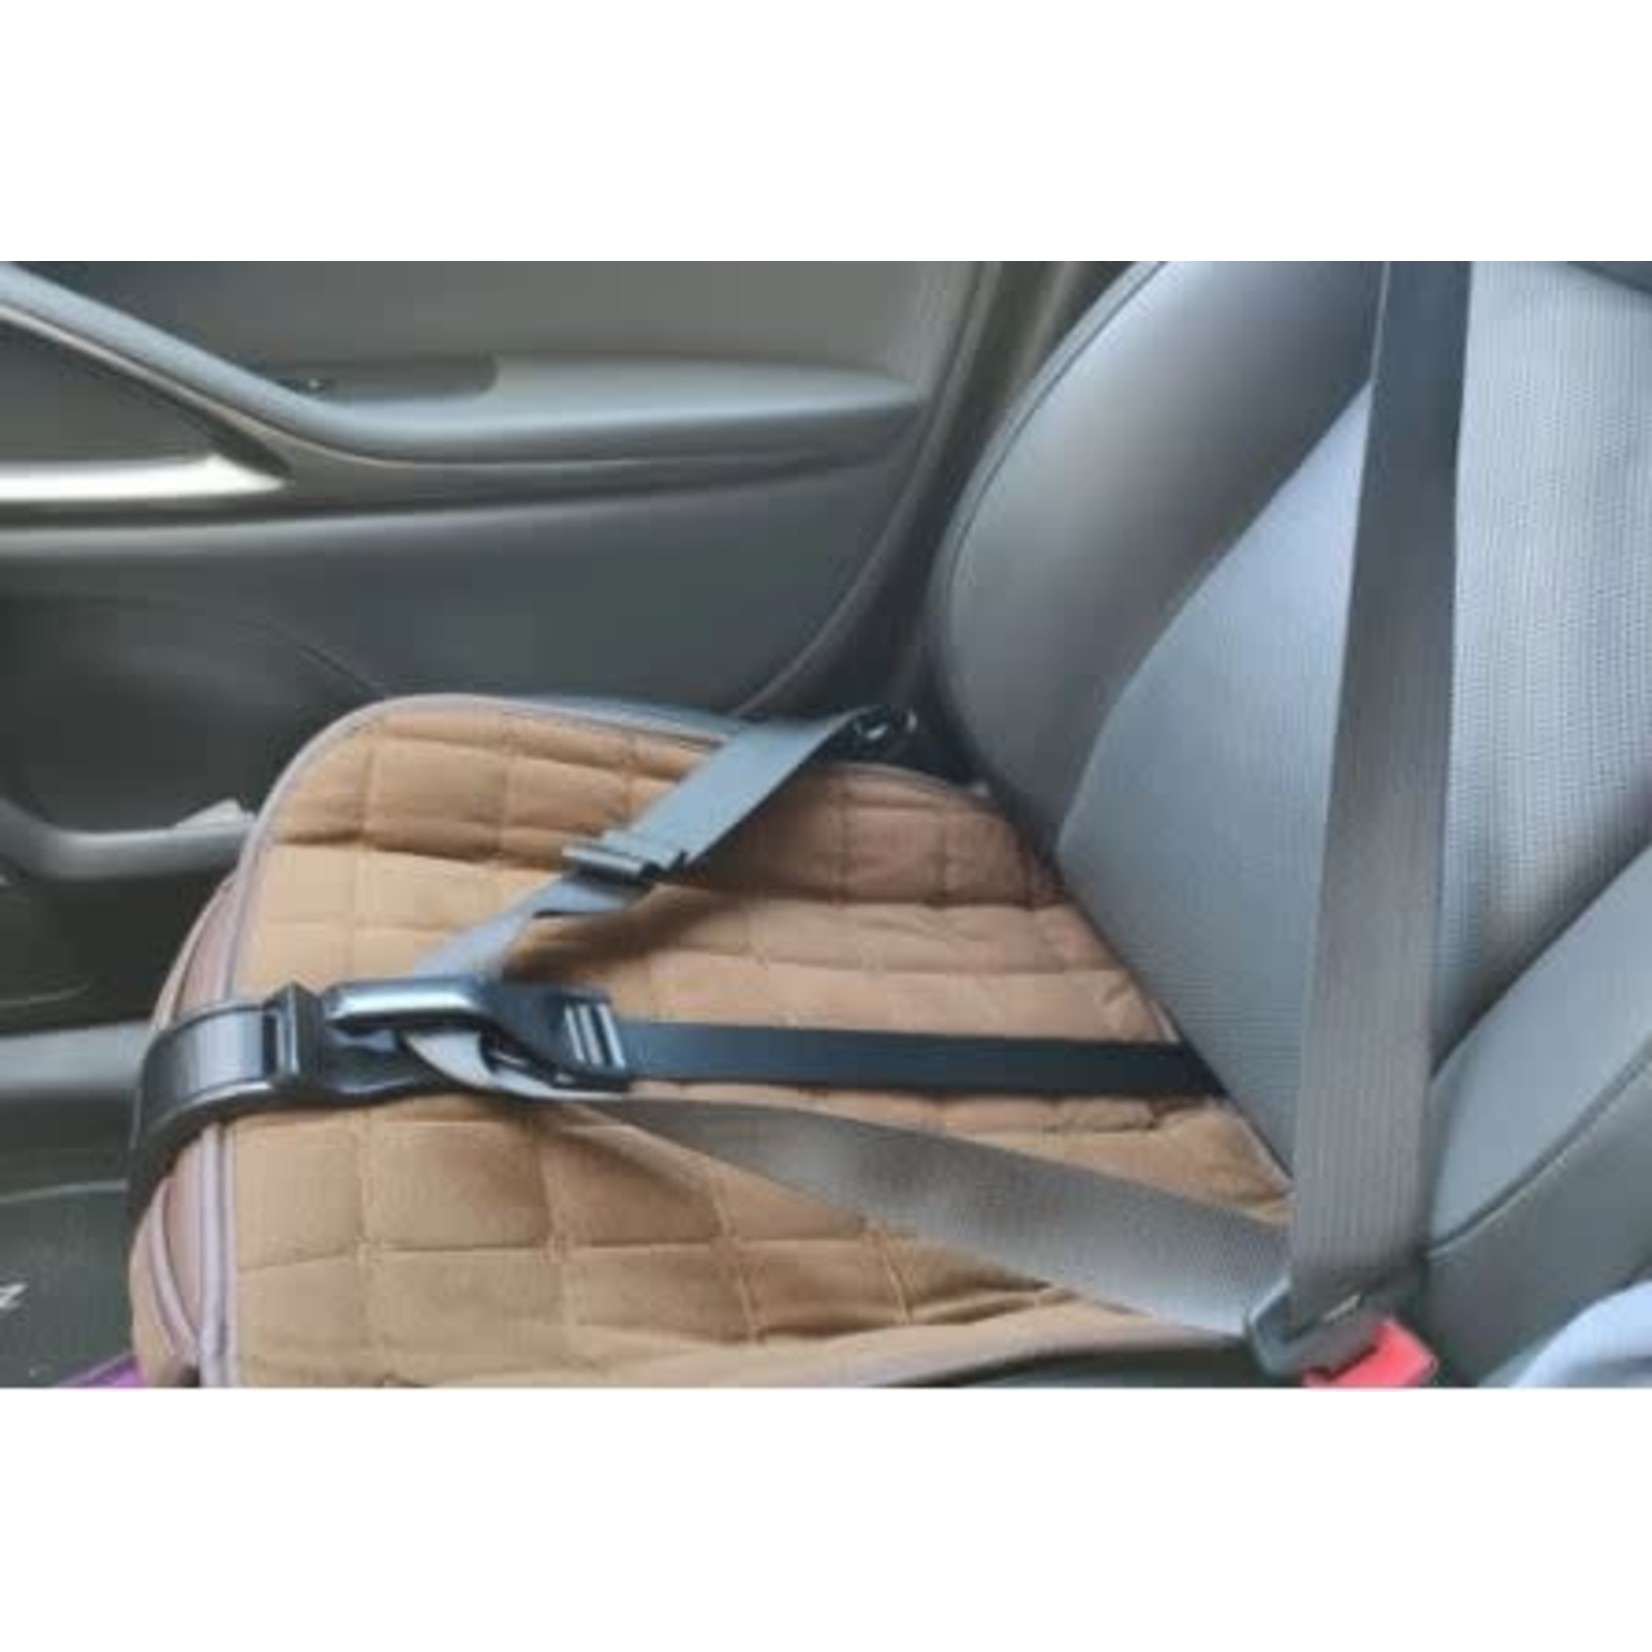 Pregnancy Seat Belt Adjuster